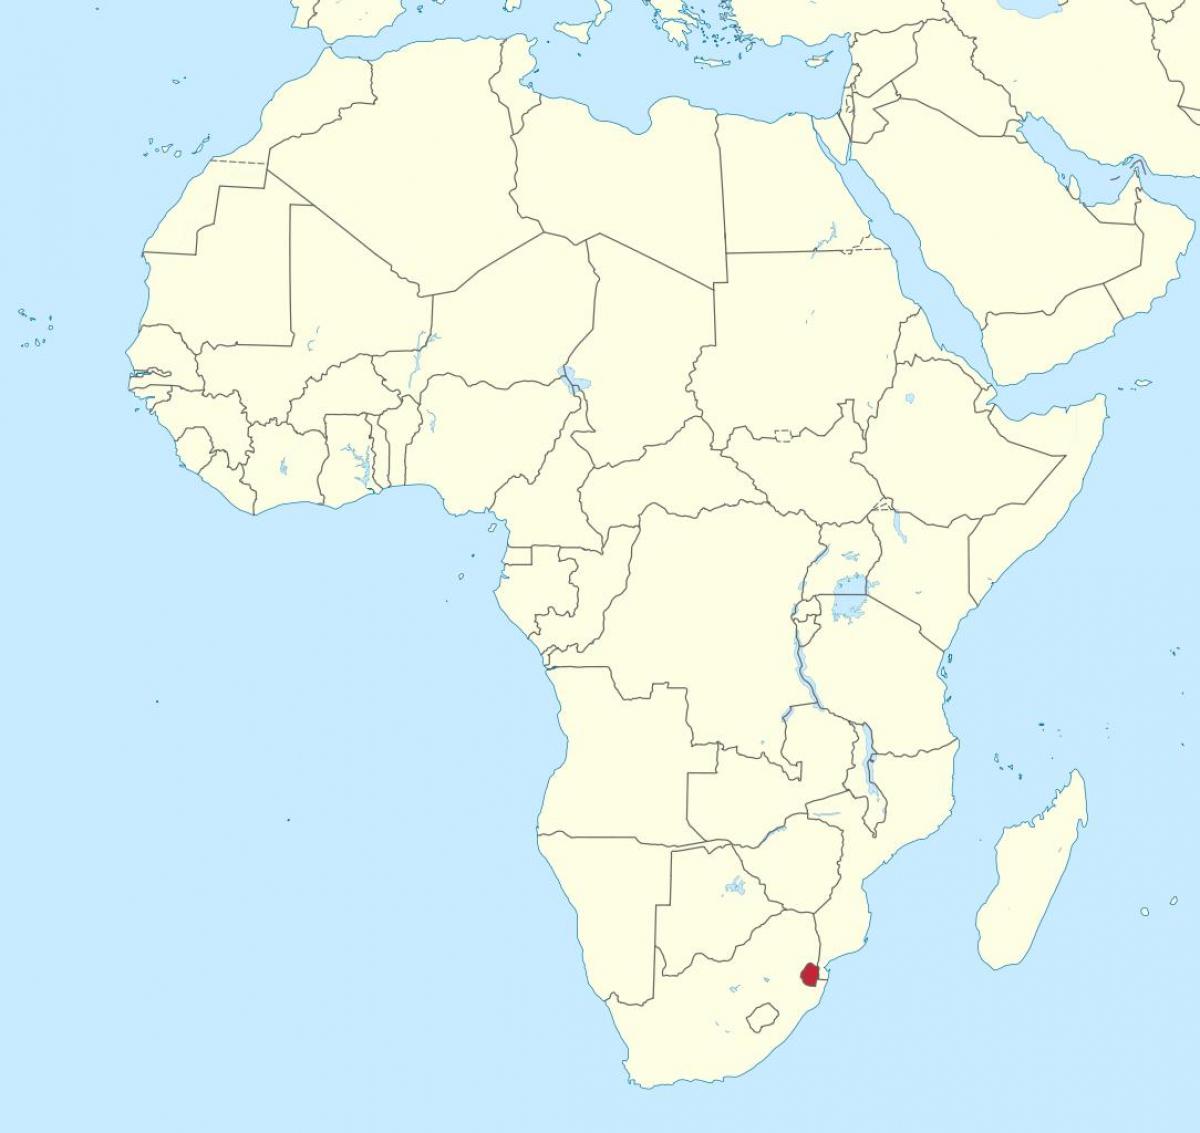 Swaziland Afrika haritası 